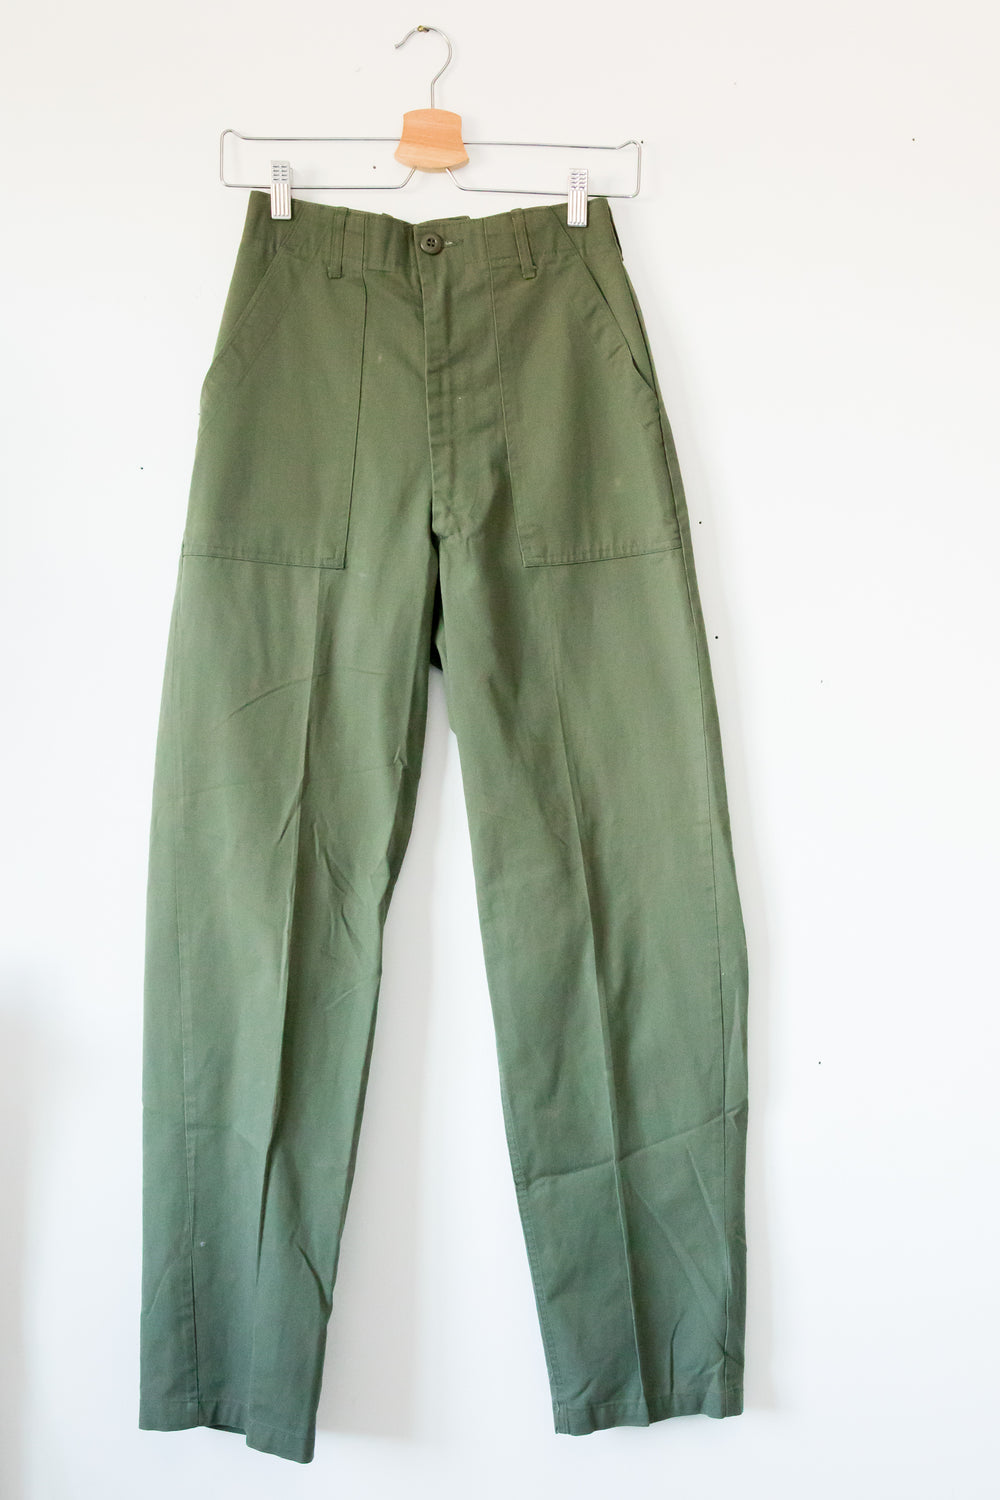 Vintage Army Pant 2